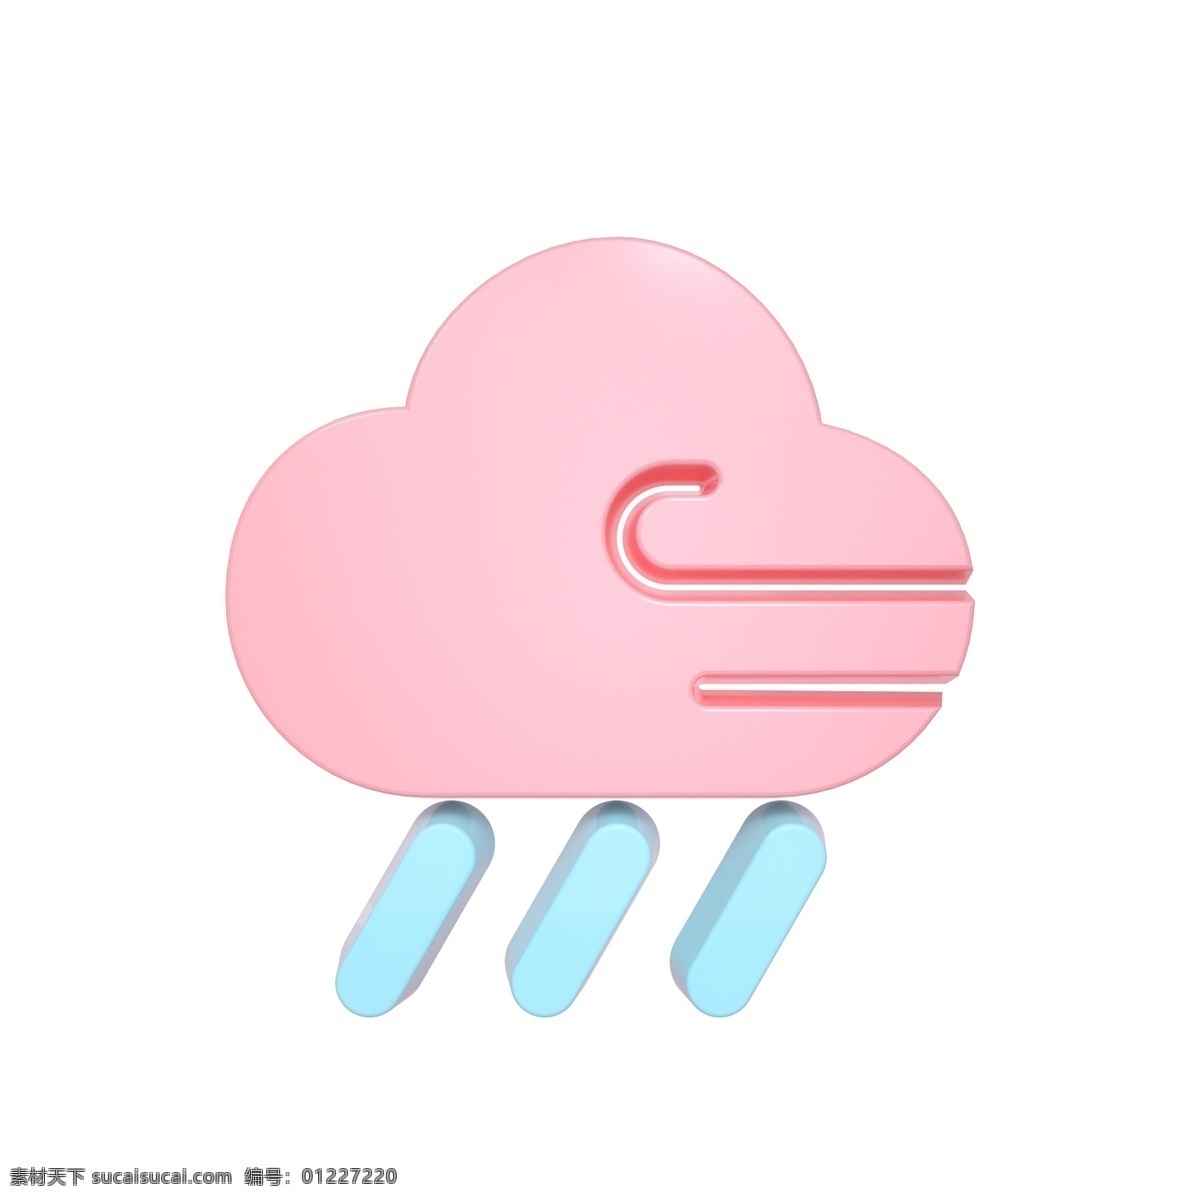 柔 色 天气 类 立体 图标 狂风 大雨 c4d 3d 柔色 粉色 青色 天气类图标 通用图标装饰 可爱 常用 狂风大雨